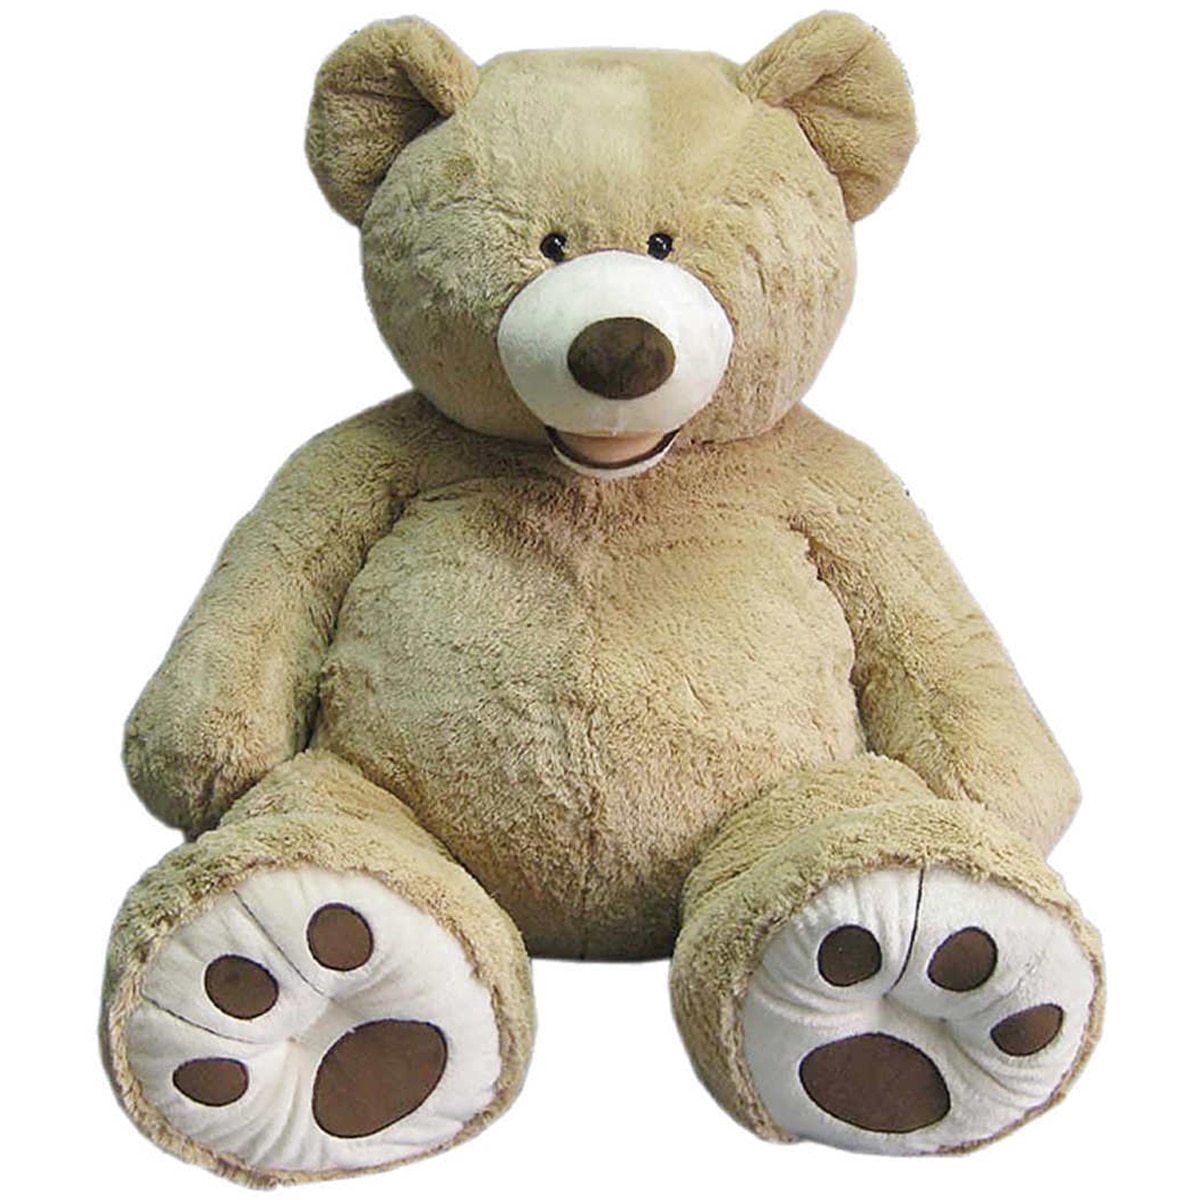 52 inch teddy bear costco